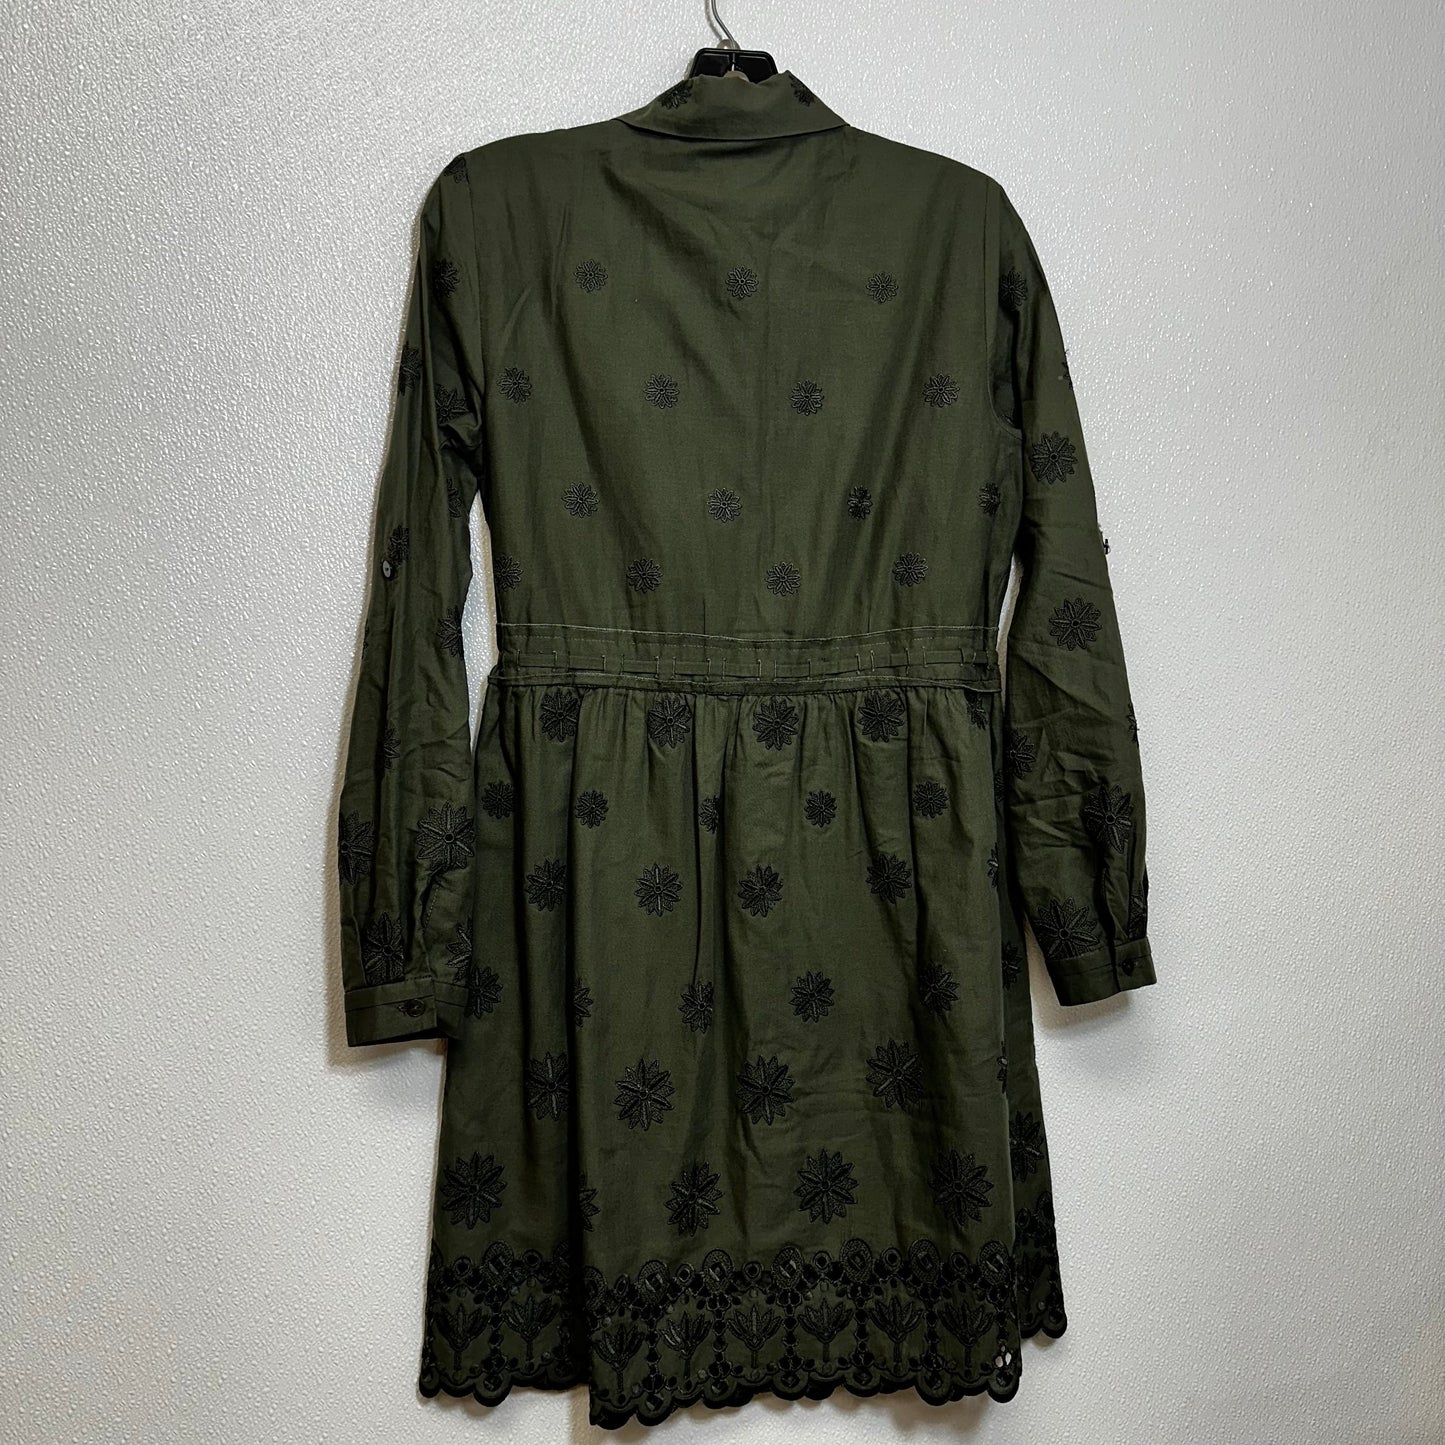 Dress Casual Short By Diane Von Furstenberg  Size: 4